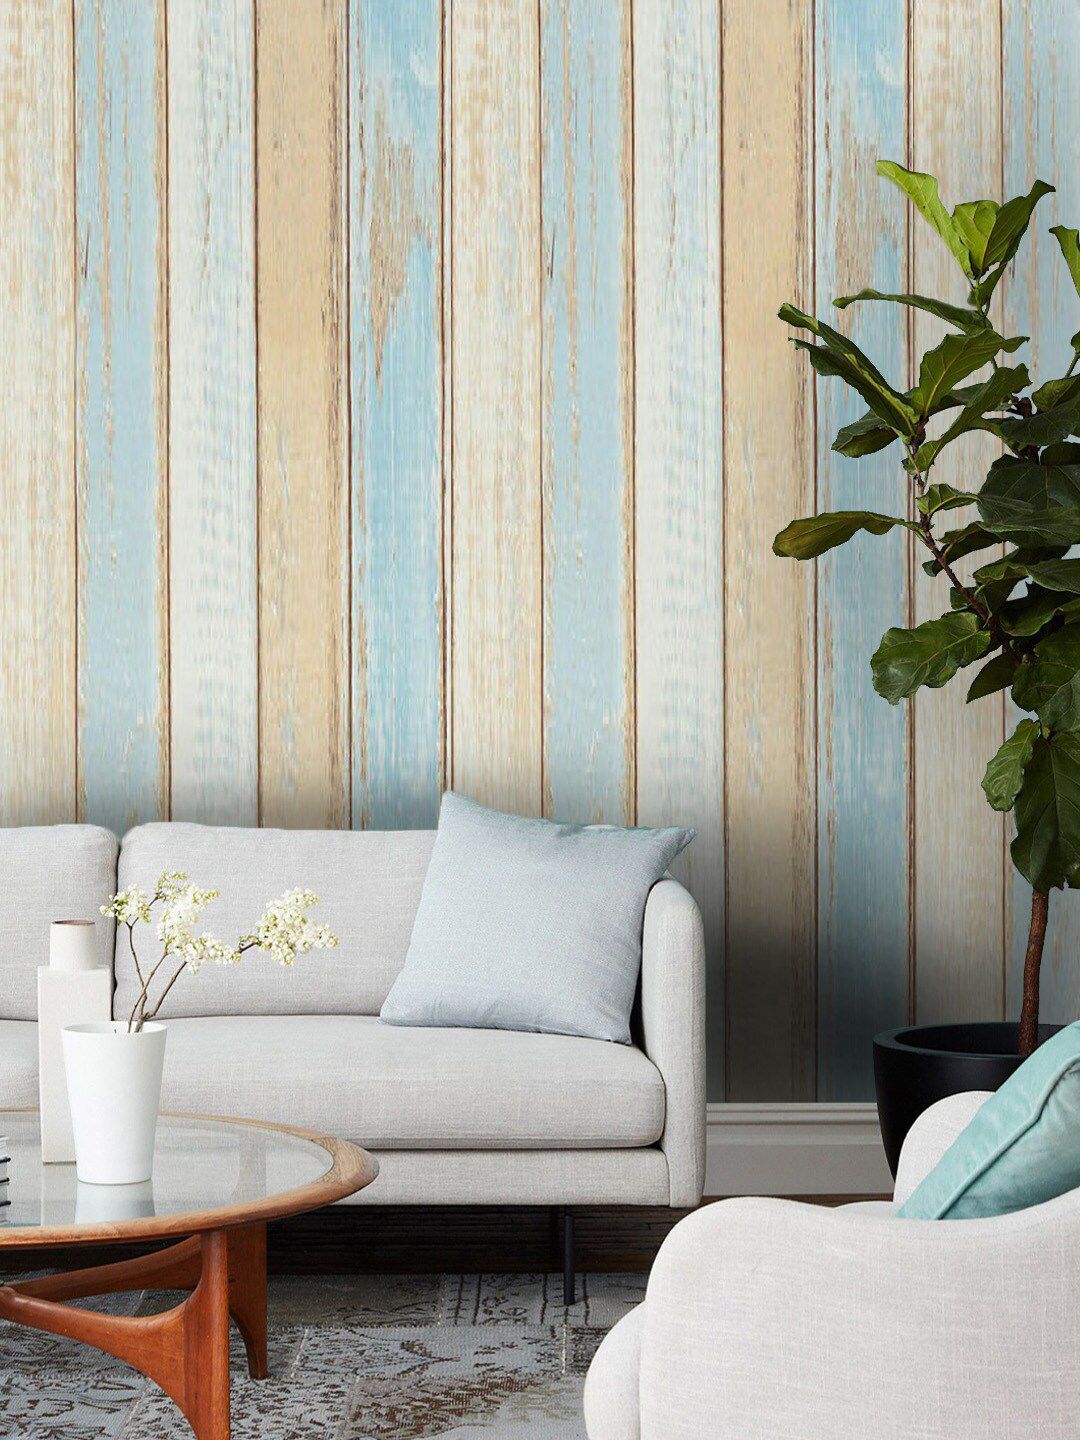 Jaamso Royals Beige & Blue Wood Textured Self-Adhesive Waterproof Wallpaper Price in India